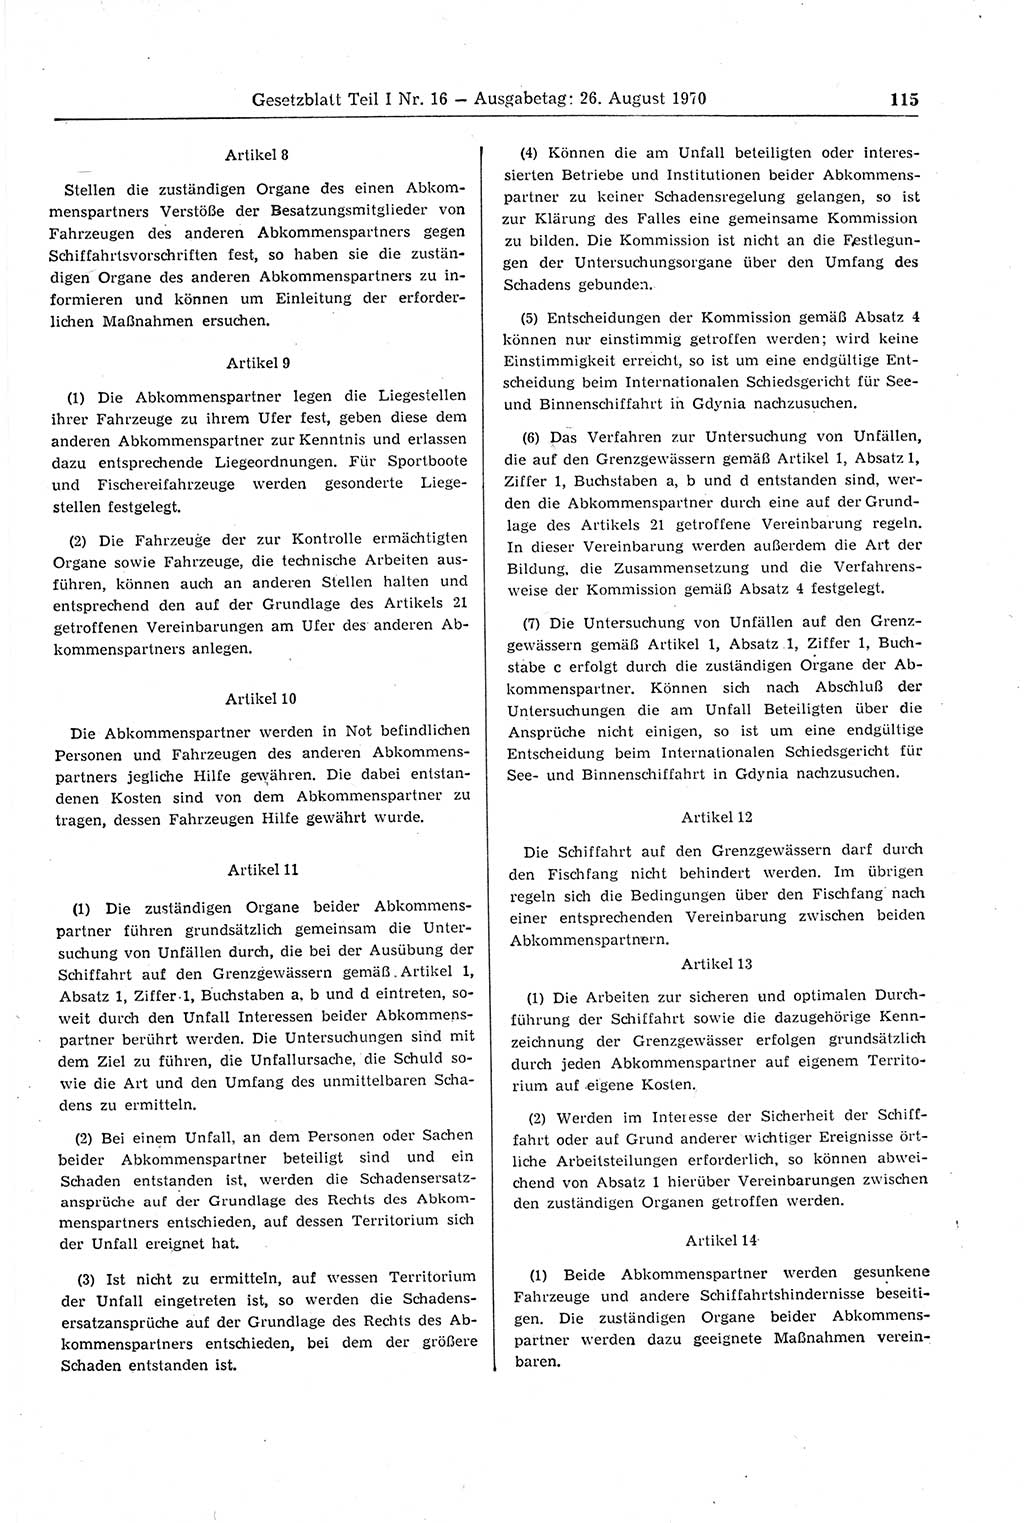 Gesetzblatt (GBl.) der Deutschen Demokratischen Republik (DDR) Teil Ⅰ 1970, Seite 115 (GBl. DDR Ⅰ 1970, S. 115)